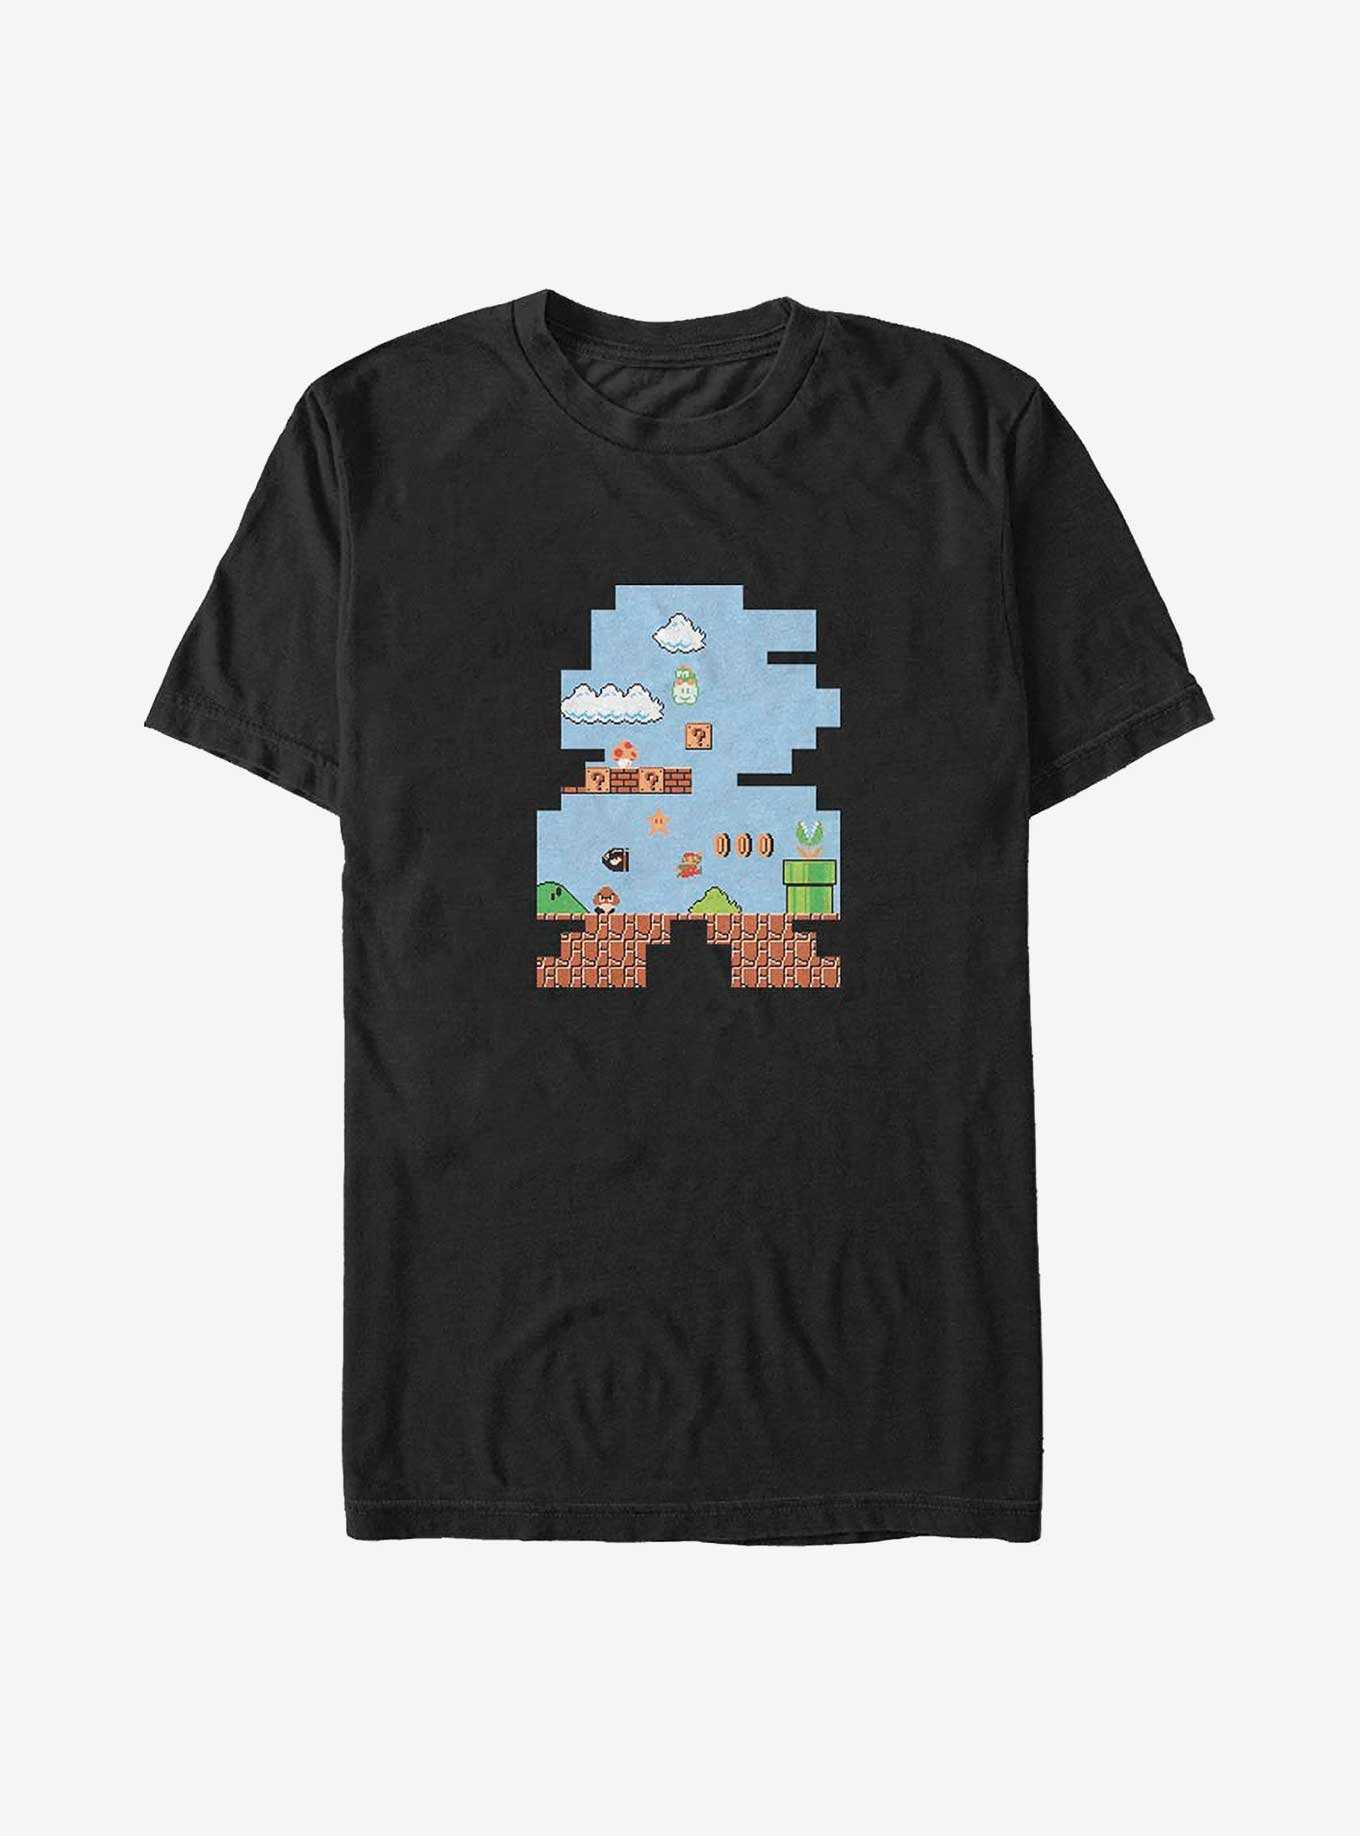 Mario Shape Up Arcade Big & Tall T-Shirt, , hi-res